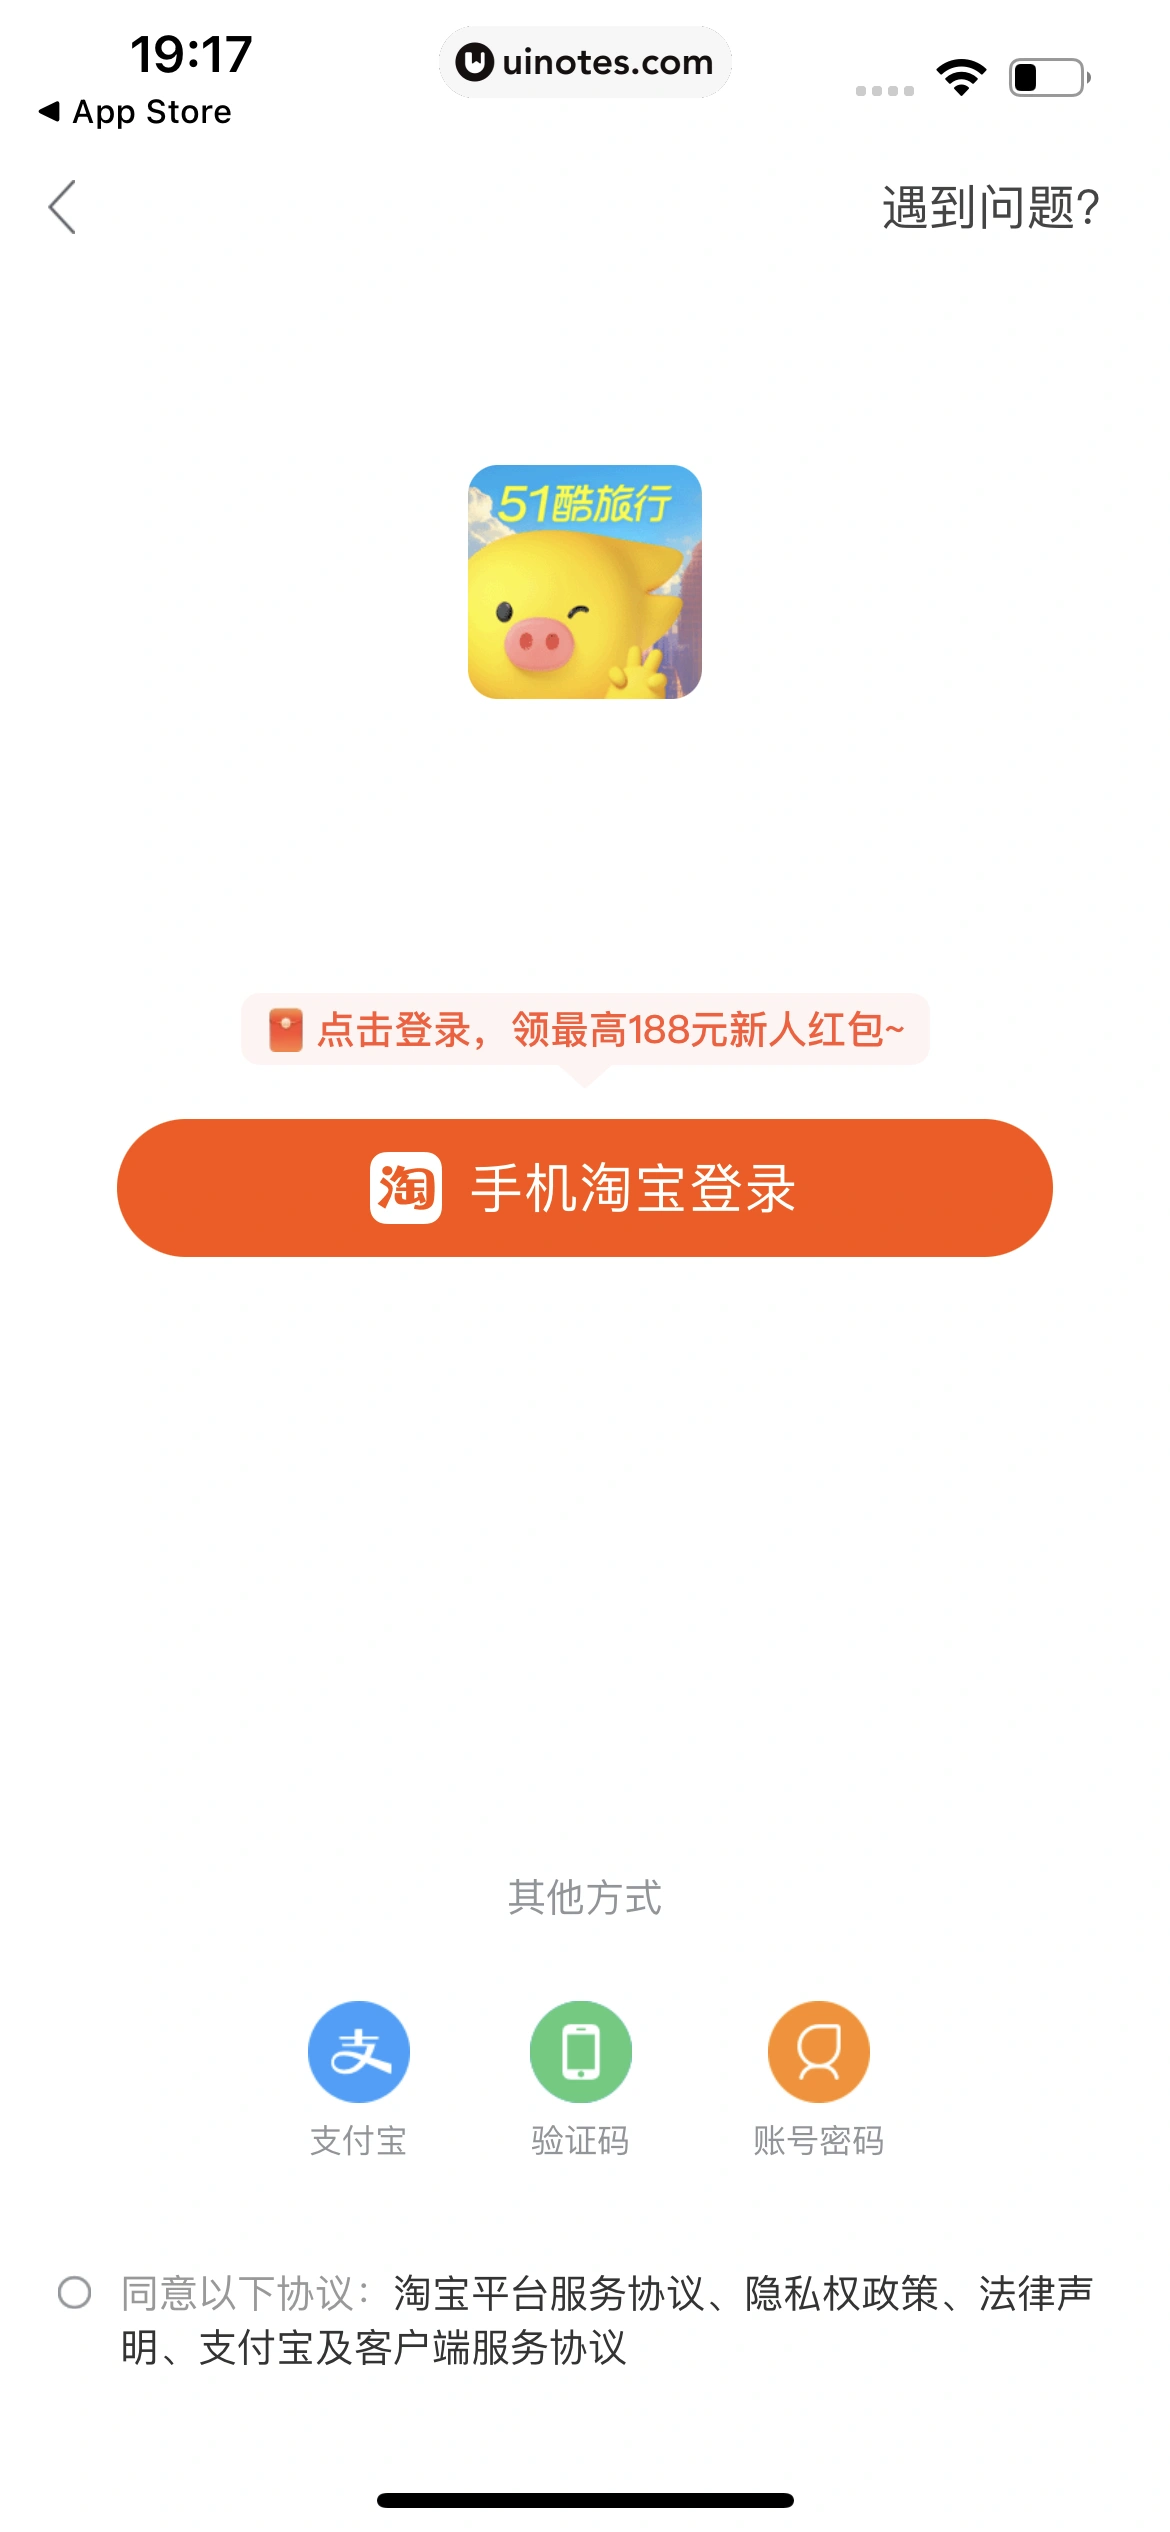 飞猪旅行 App 截图 013 - UI Notes